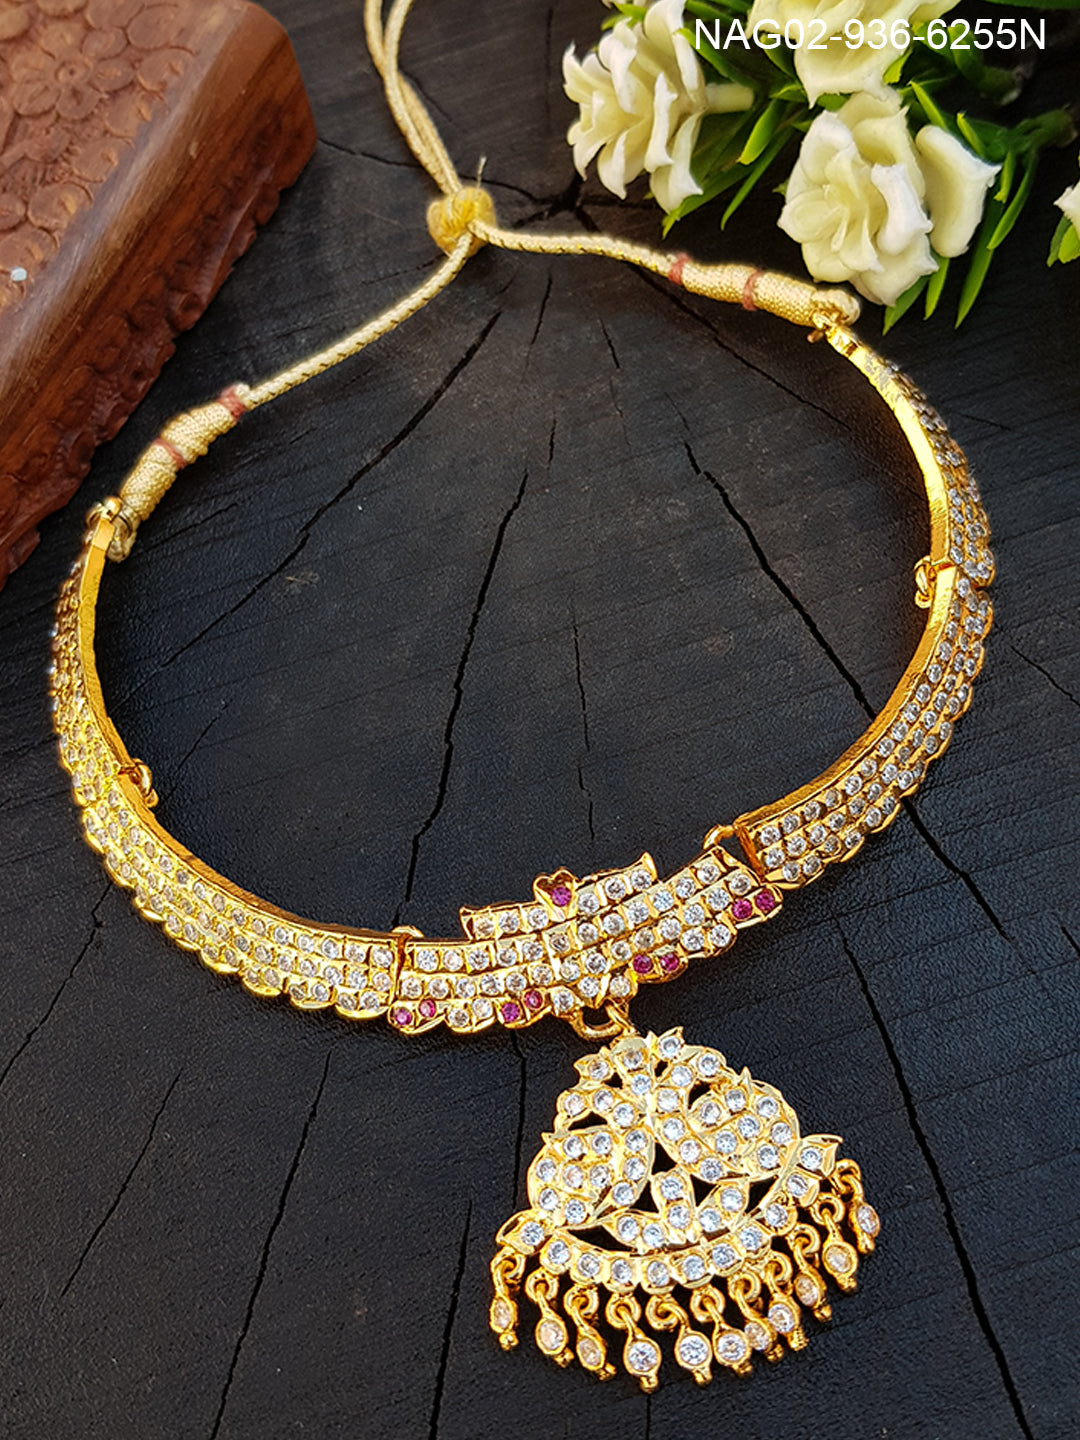 Gatti jewllery (impon jewelry) necklace set 6255N